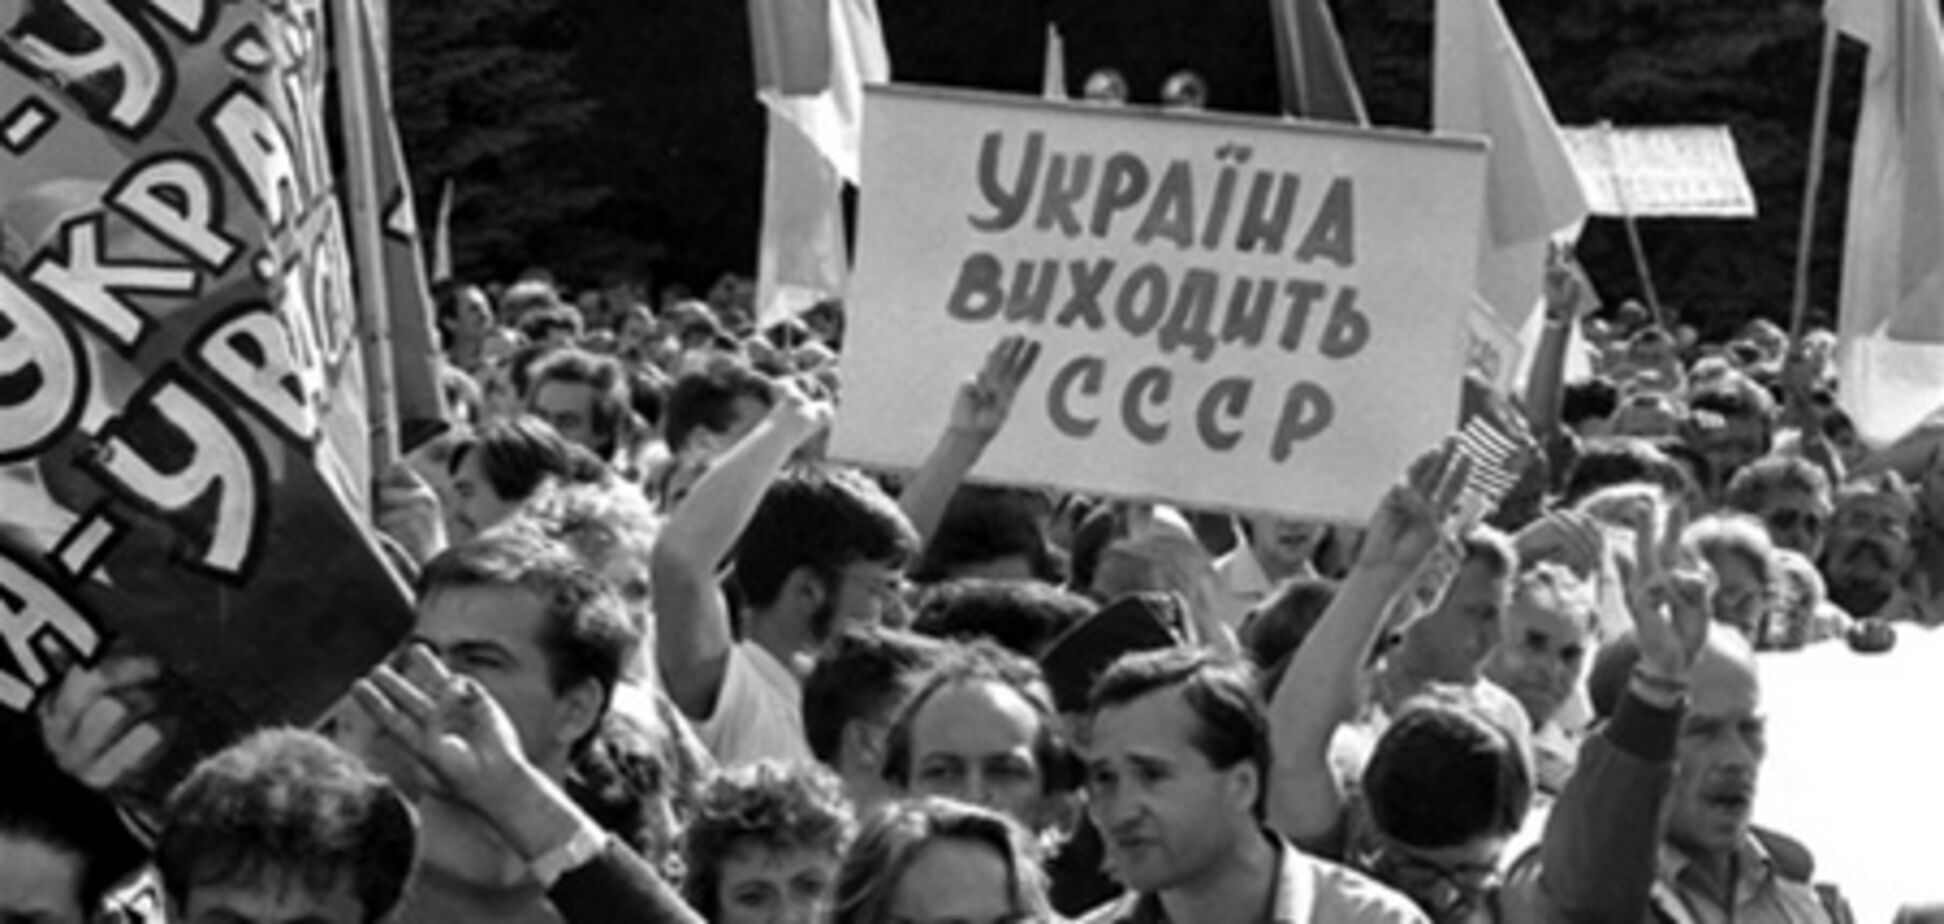 Кравчук: референдум - це історичний день Утворення незалежної держави